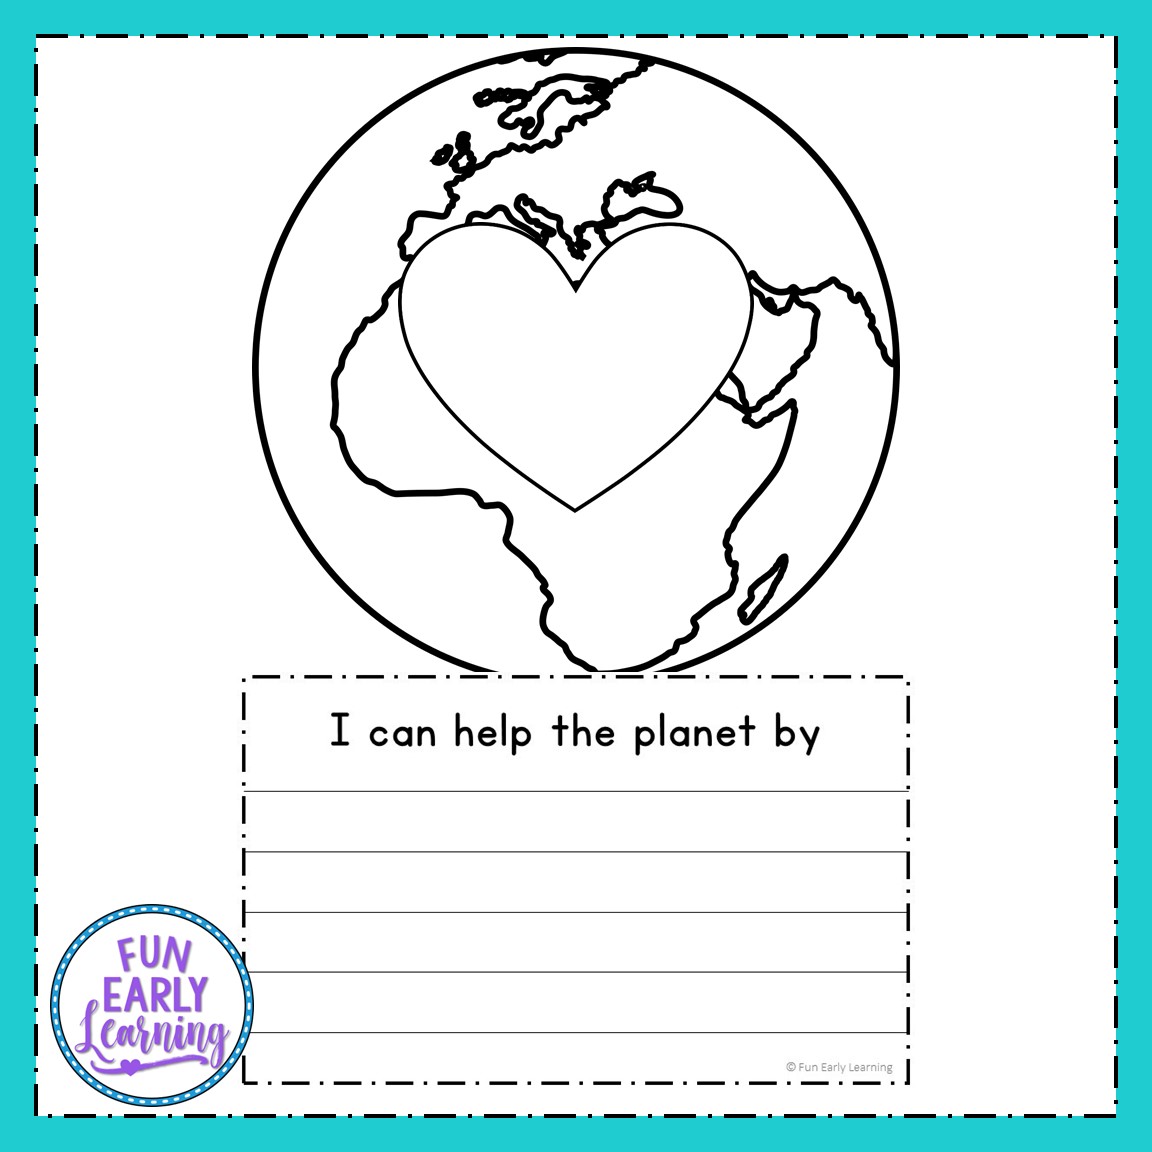 World Earth Day Essay - Your Home Teacher